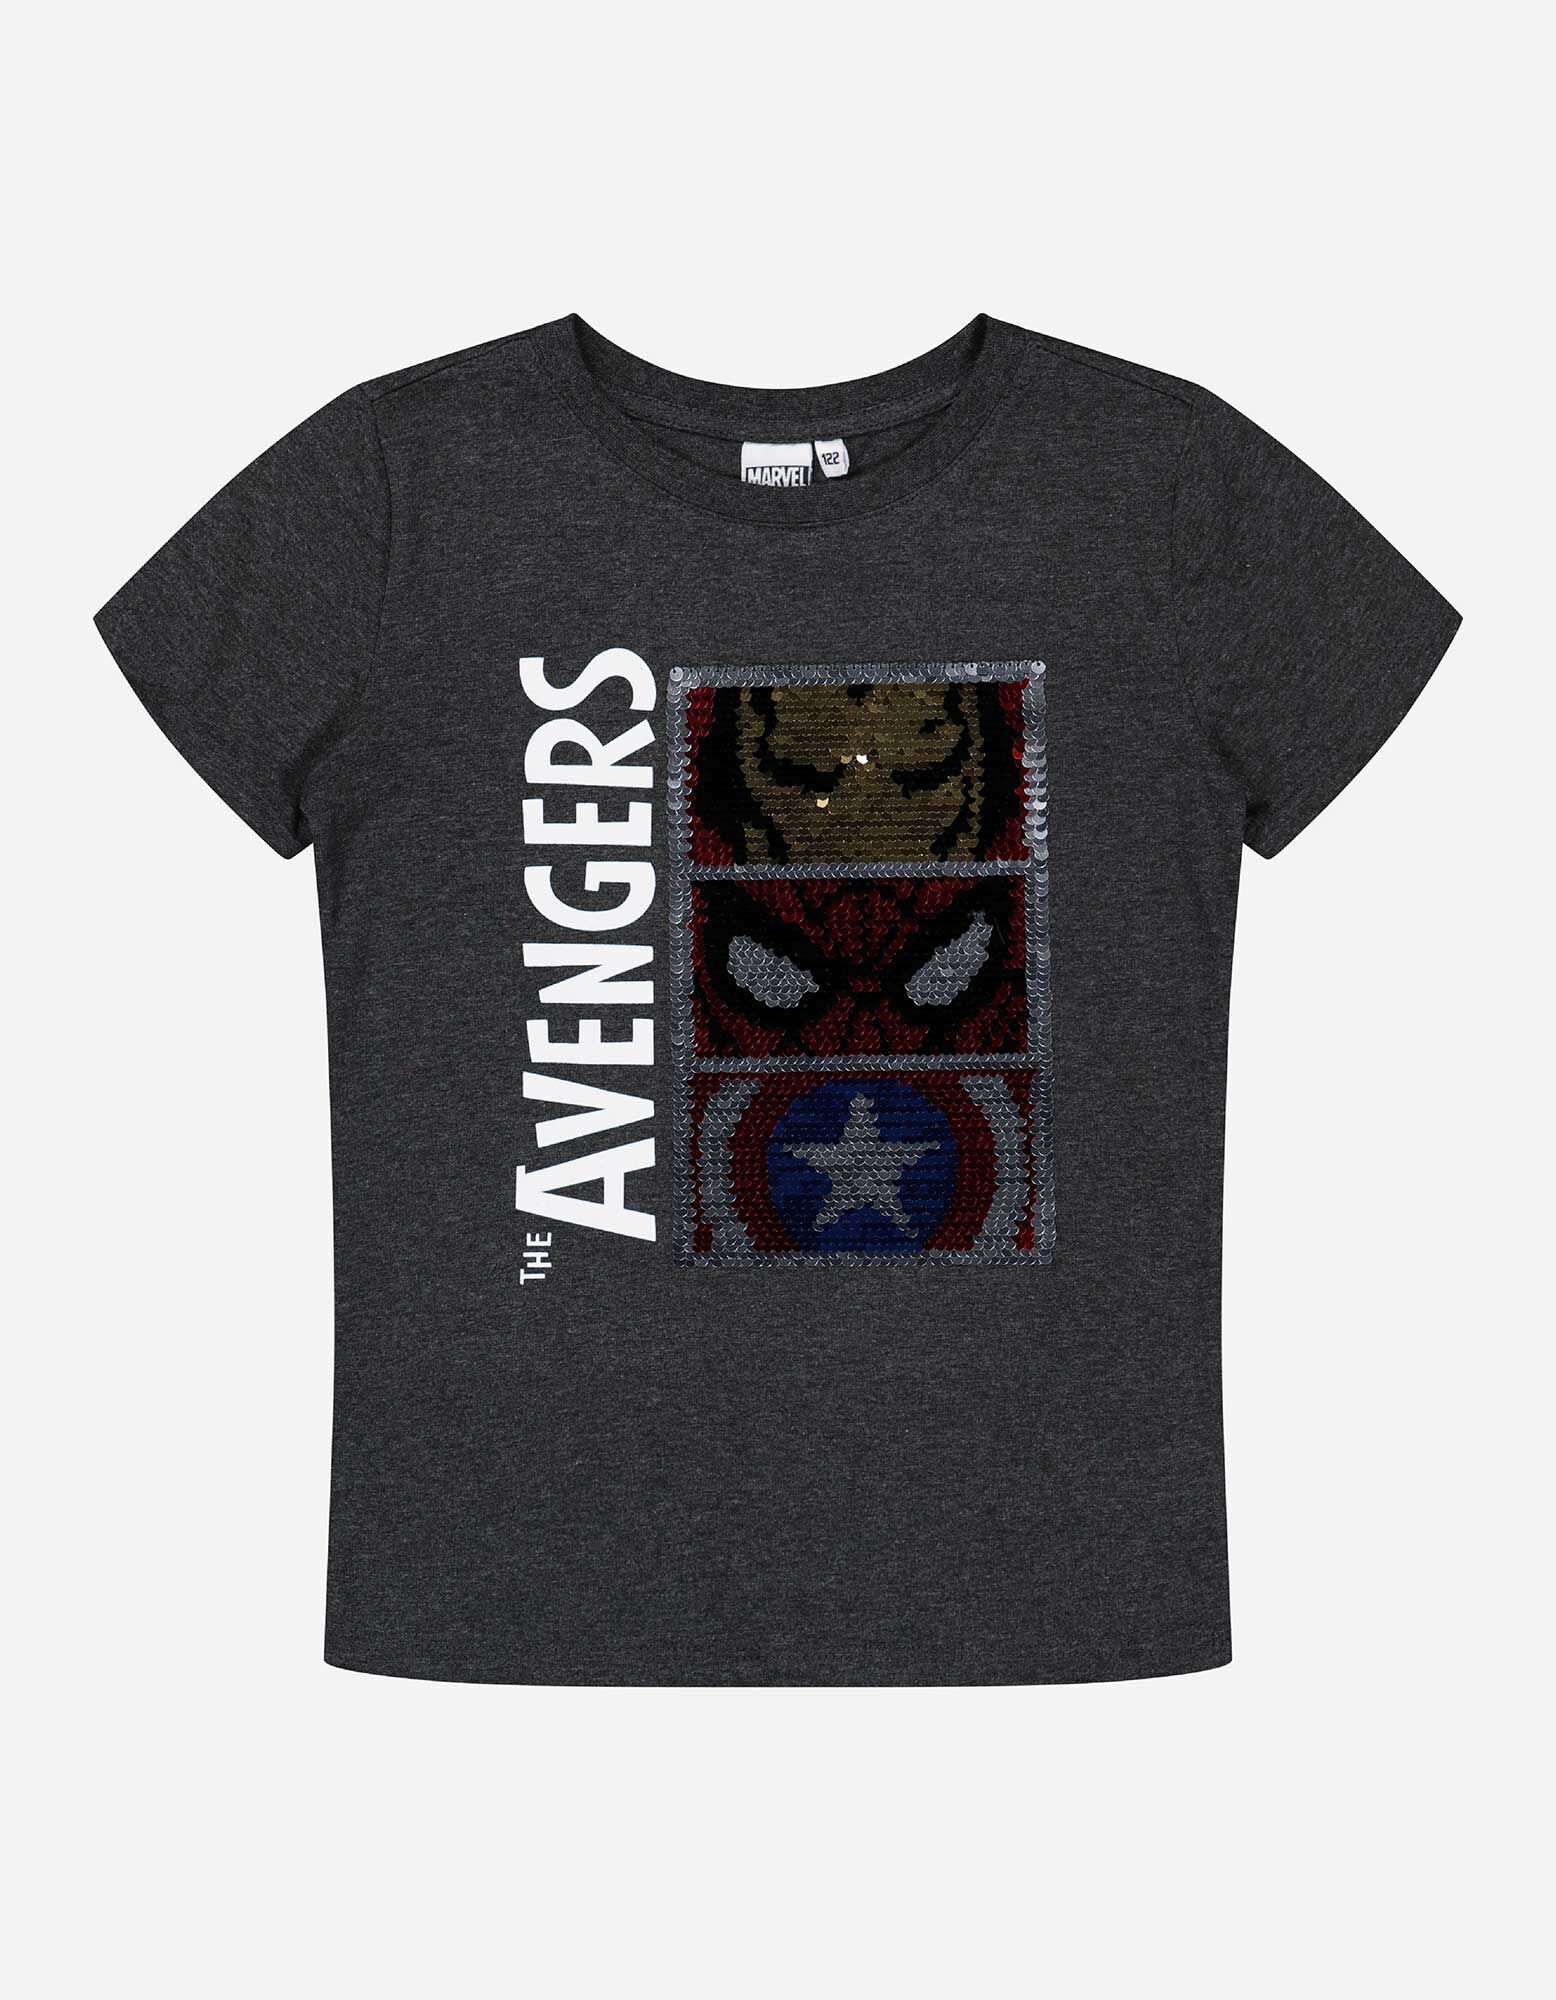 Marvel Jungen T-Shirt